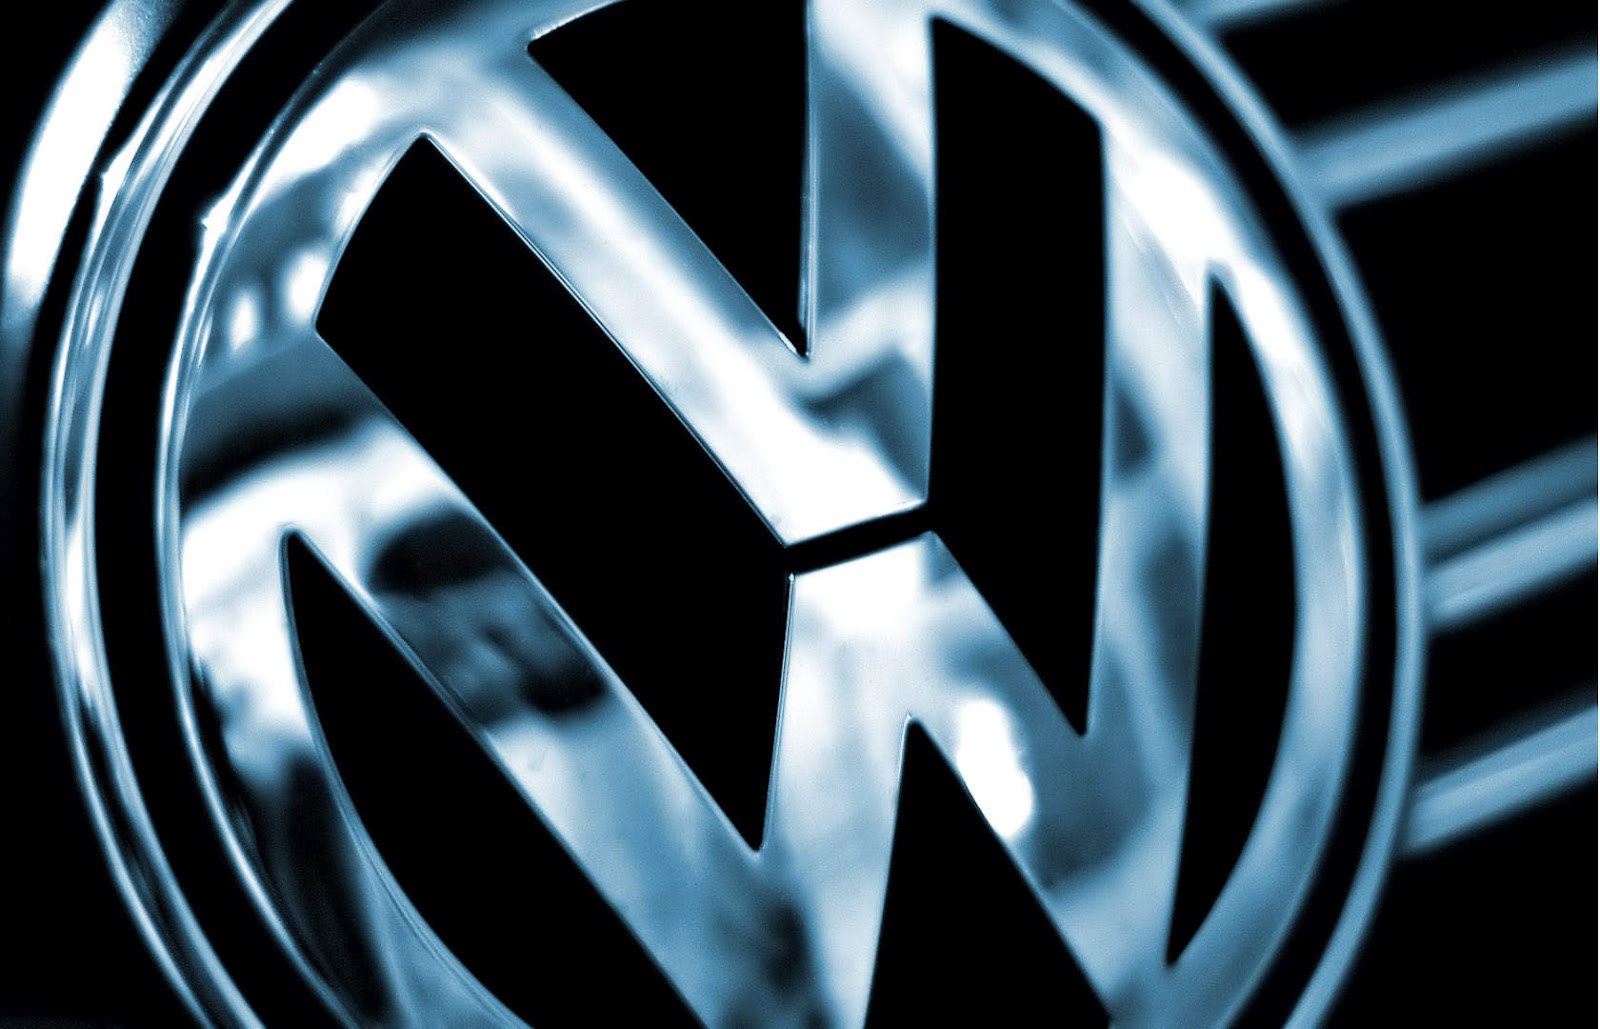  HD Wallpapers Volkswagen Logo Wallpaper 1600x1029